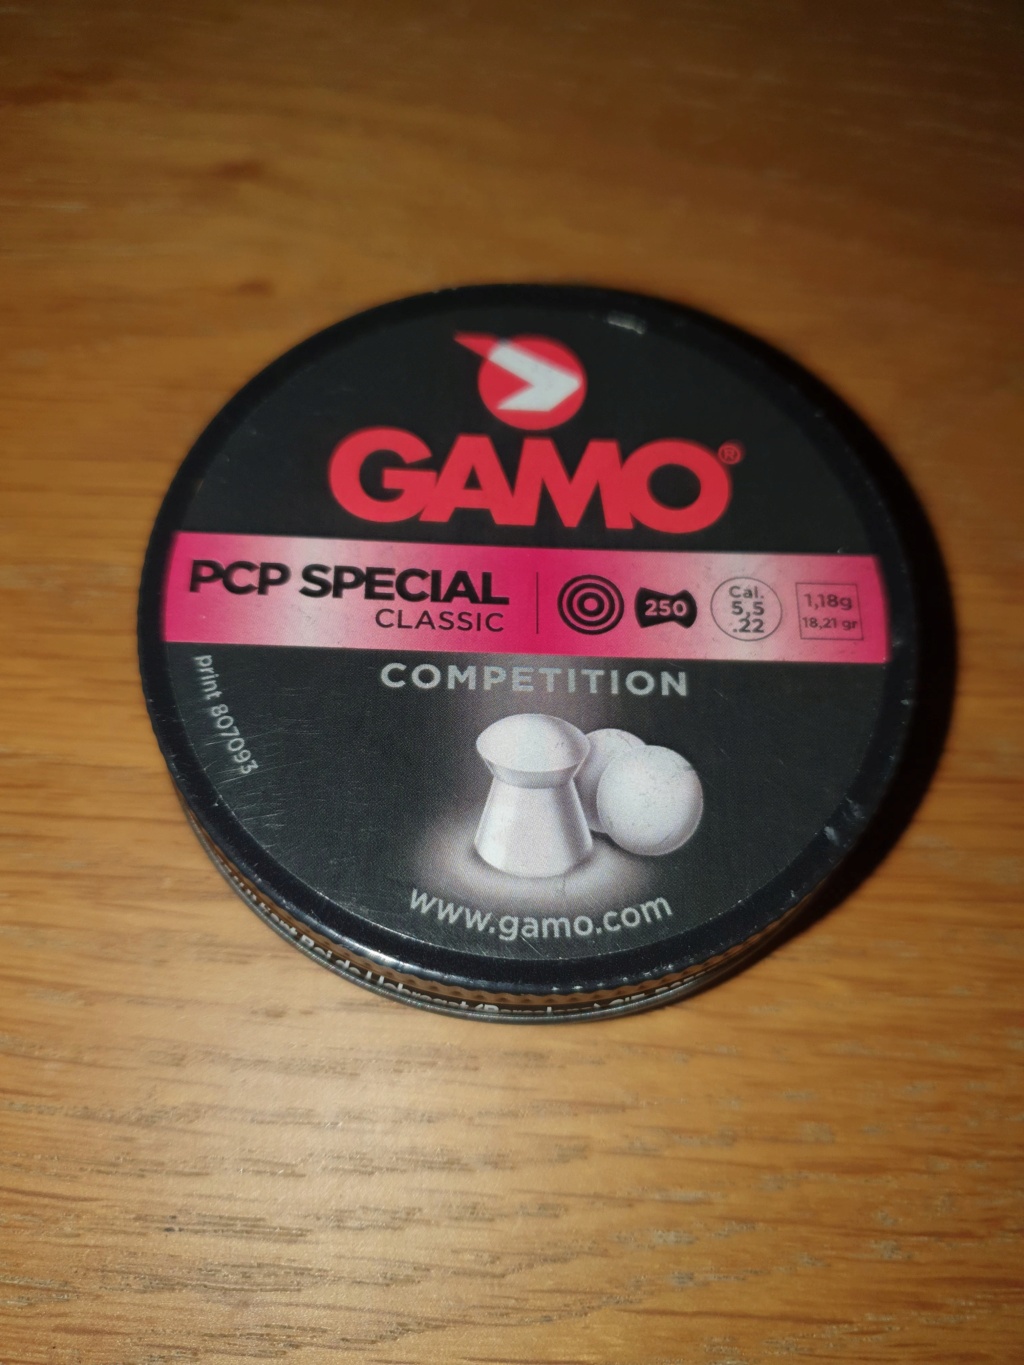 GAMO PRO MAGNUM PENETRATION - Mon test 20220910